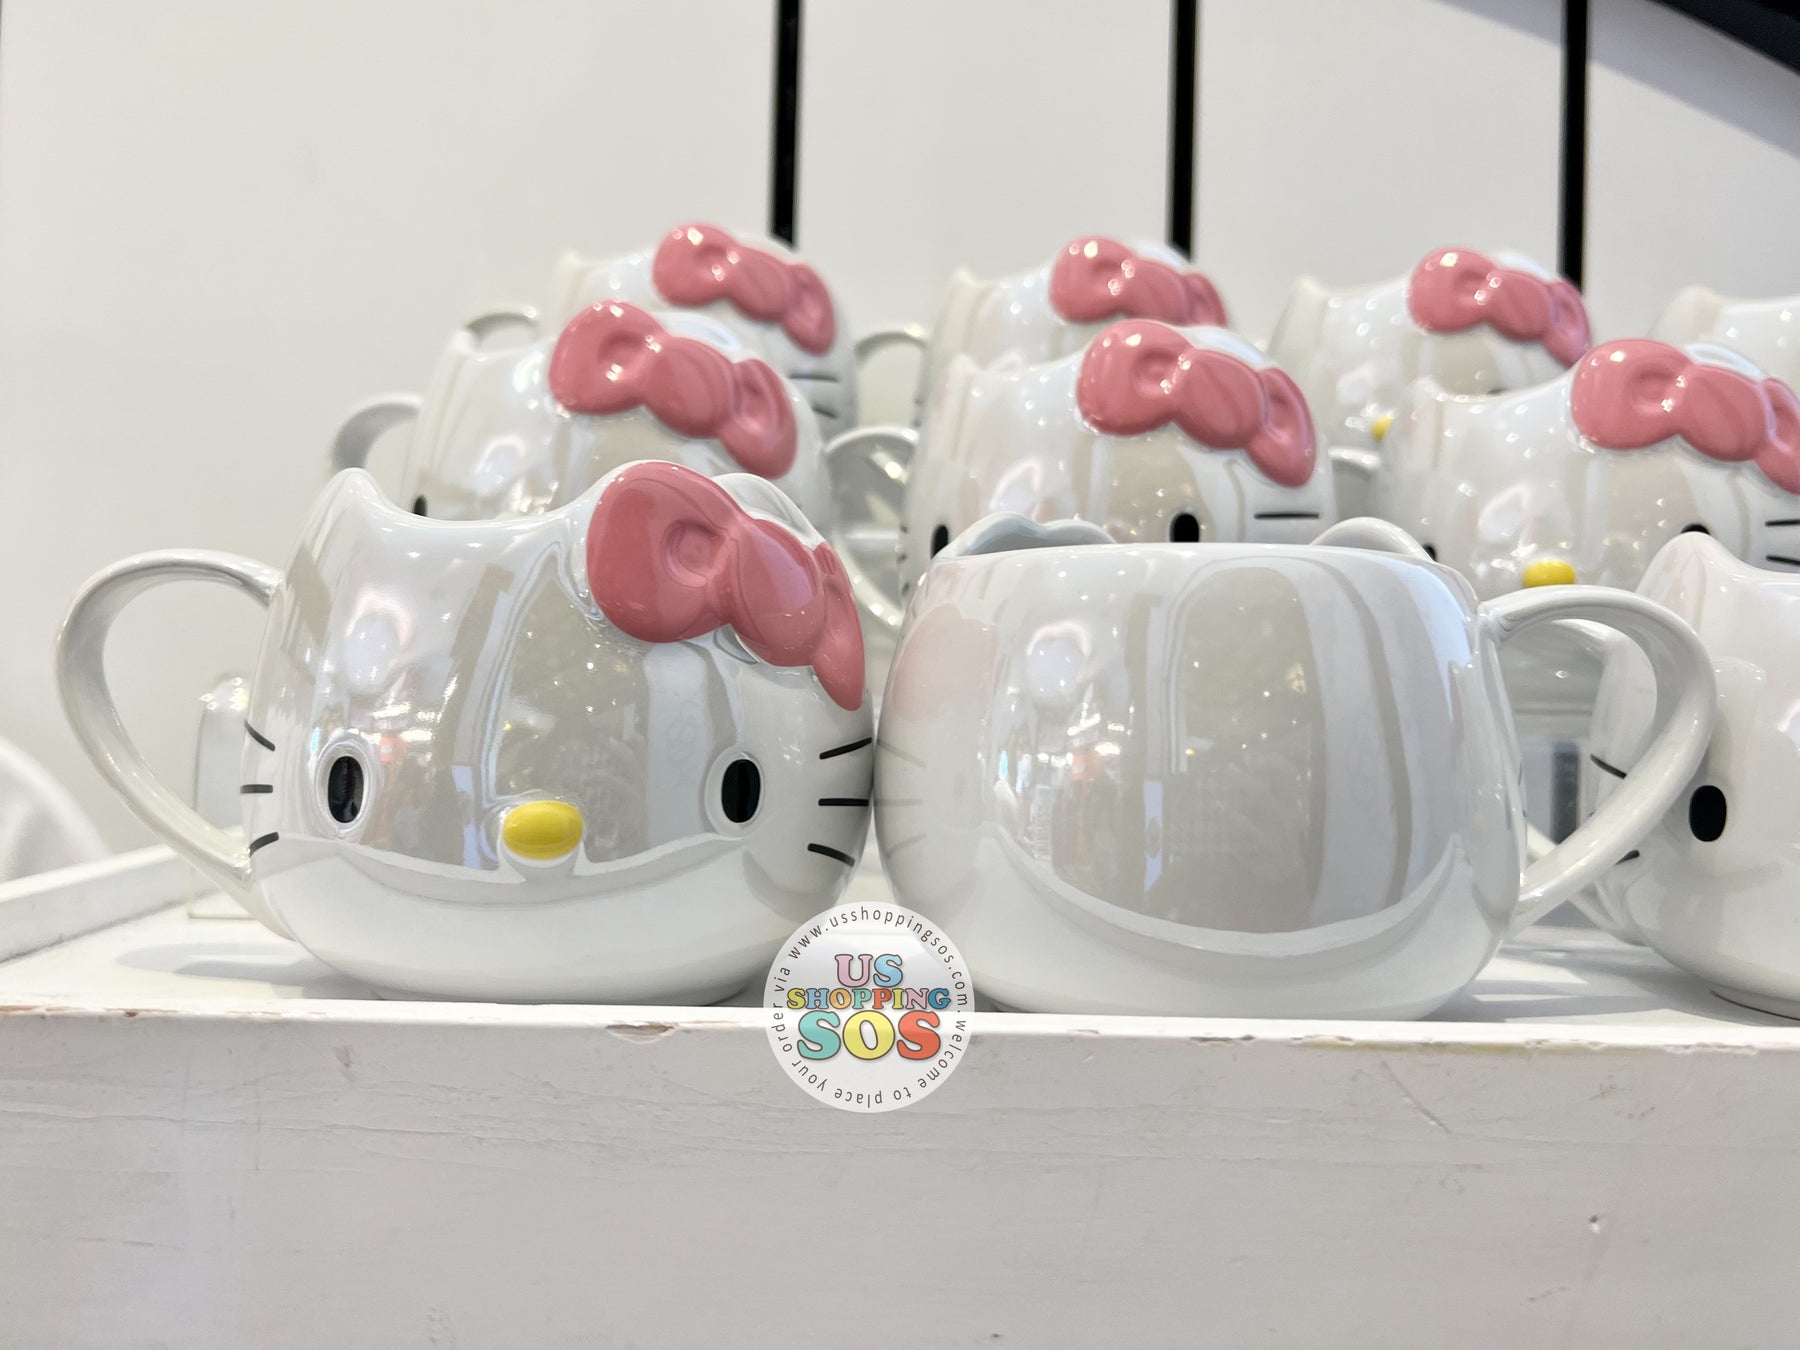 Sanrio - Cute 3D Character Mug